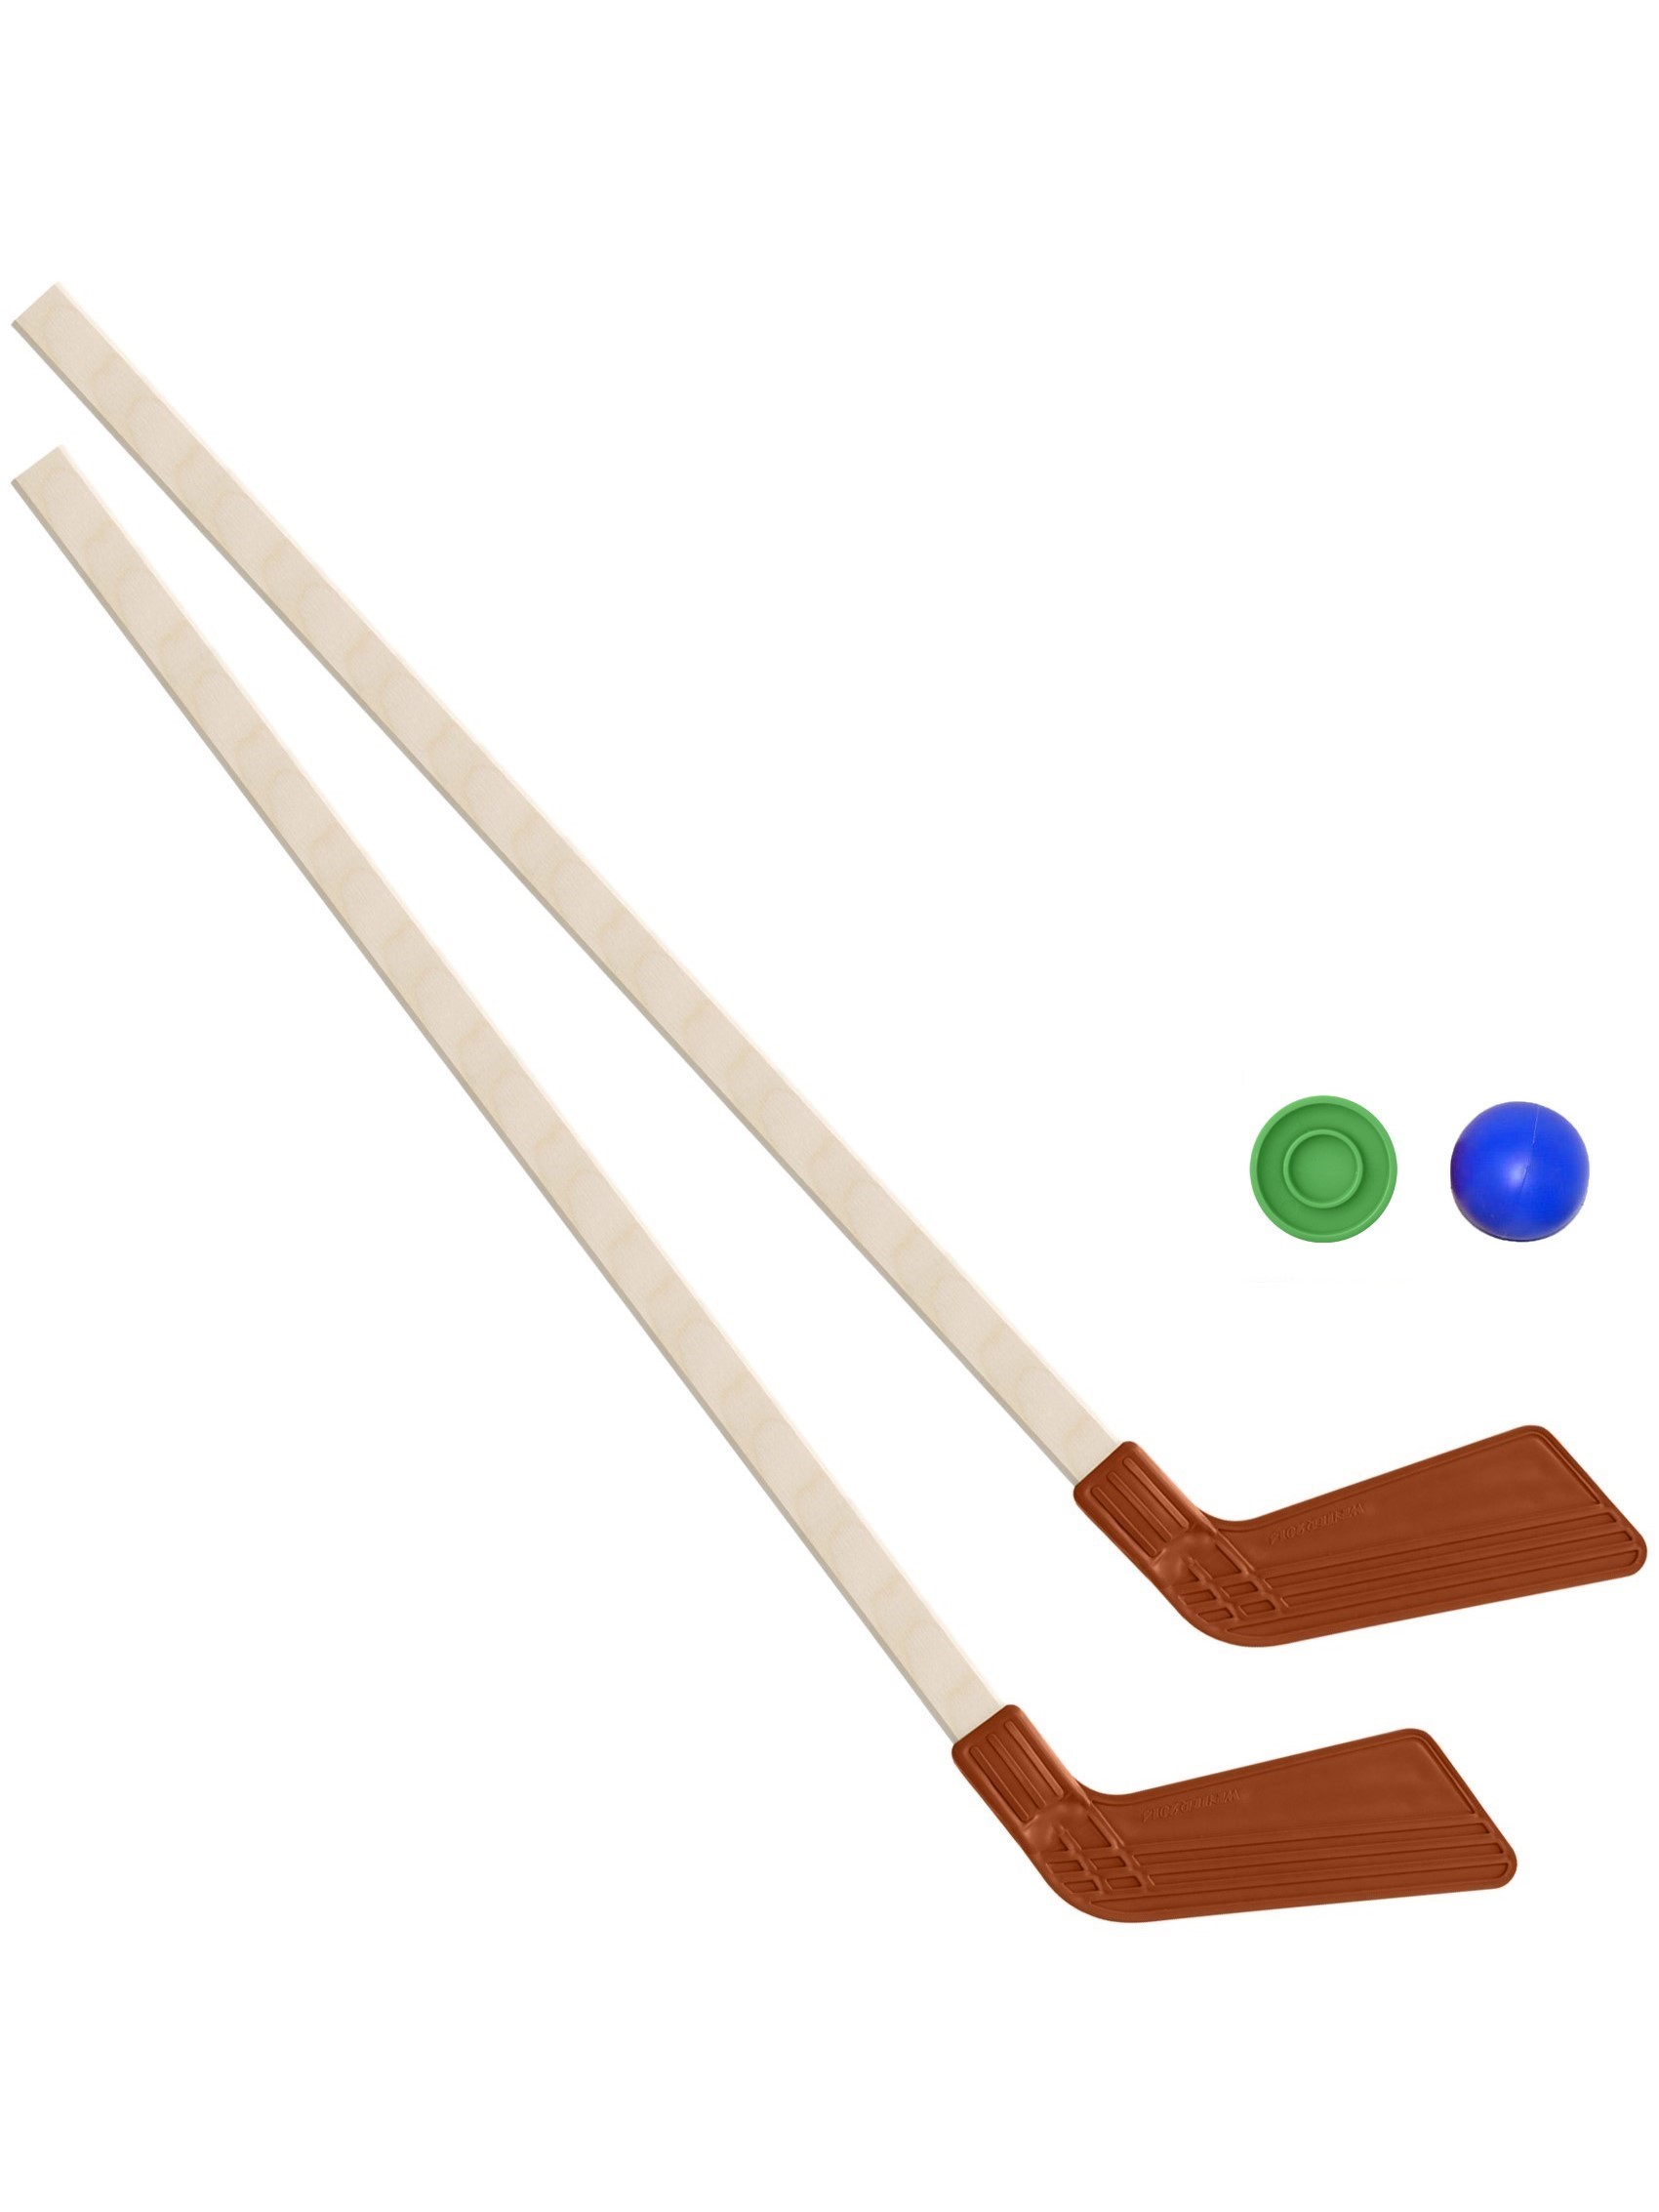 Детский хоккейный набор Задира-плюс Клюшка хоккейная детская 2 шт(красные)+шайба+мячик